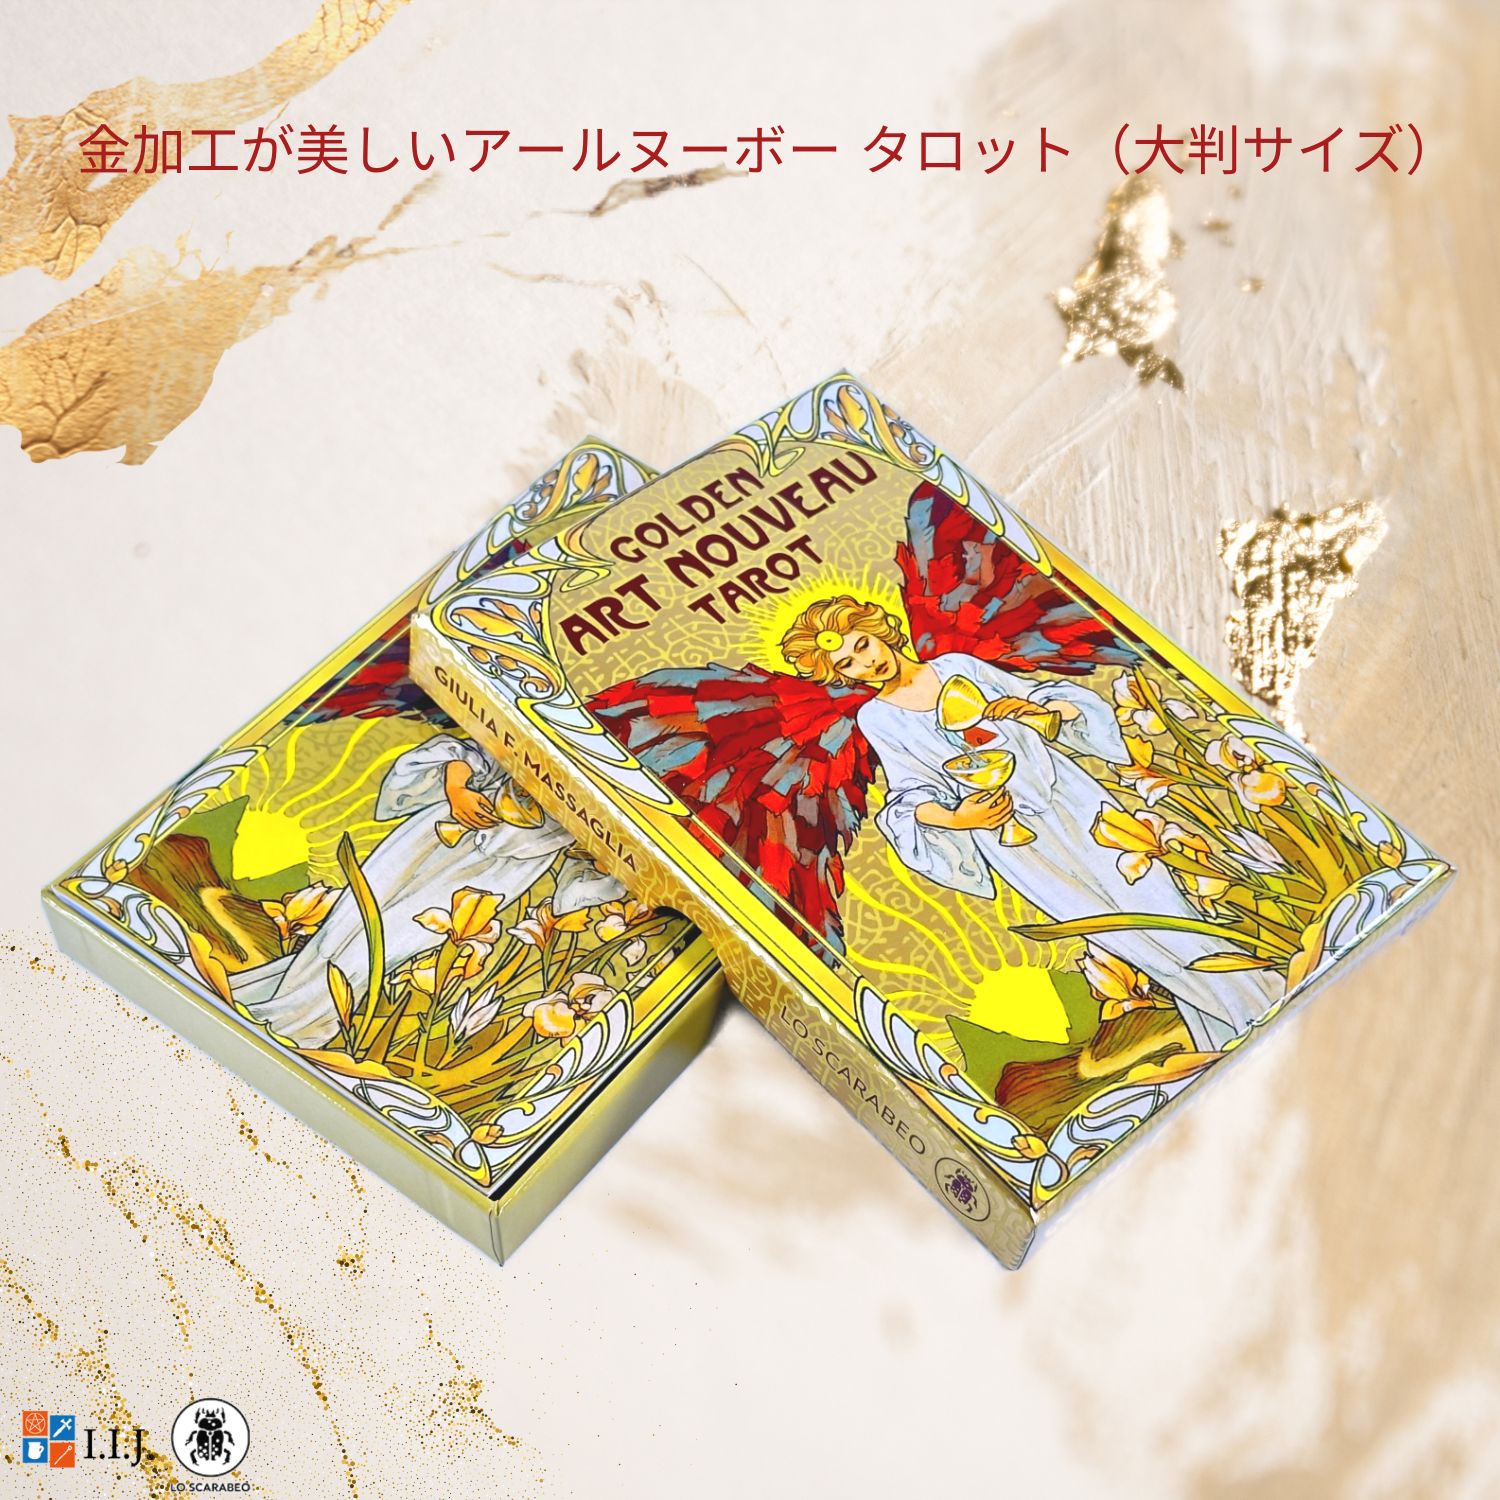 タロットカード タロット占い 大判サイズ ゴールデン アールヌーボー タロット 大アルカナ 22枚 Golden Art Nouveau Tarot  Major 日本語解説書付き 正規品